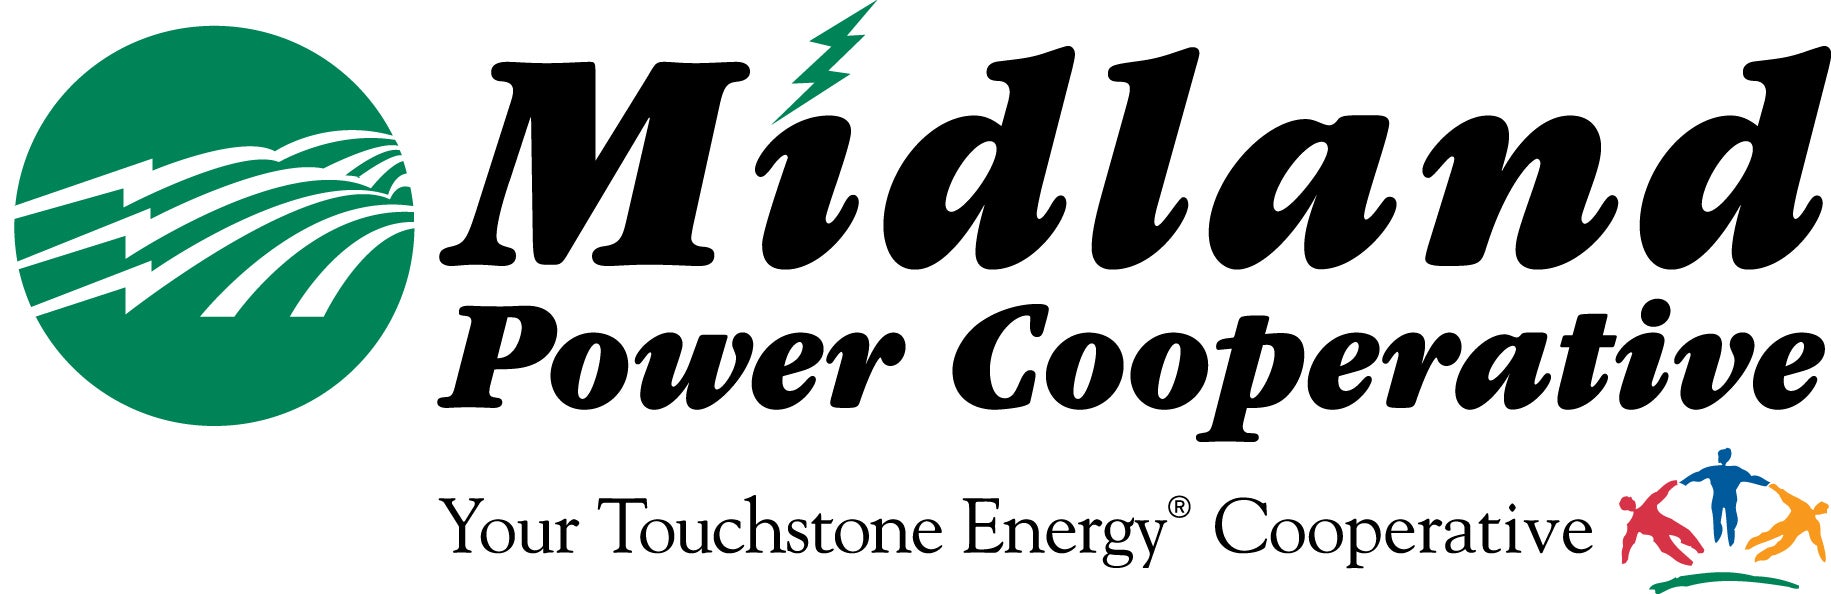 Midland%20Logo%20NoPHC(Touchstone).jpg